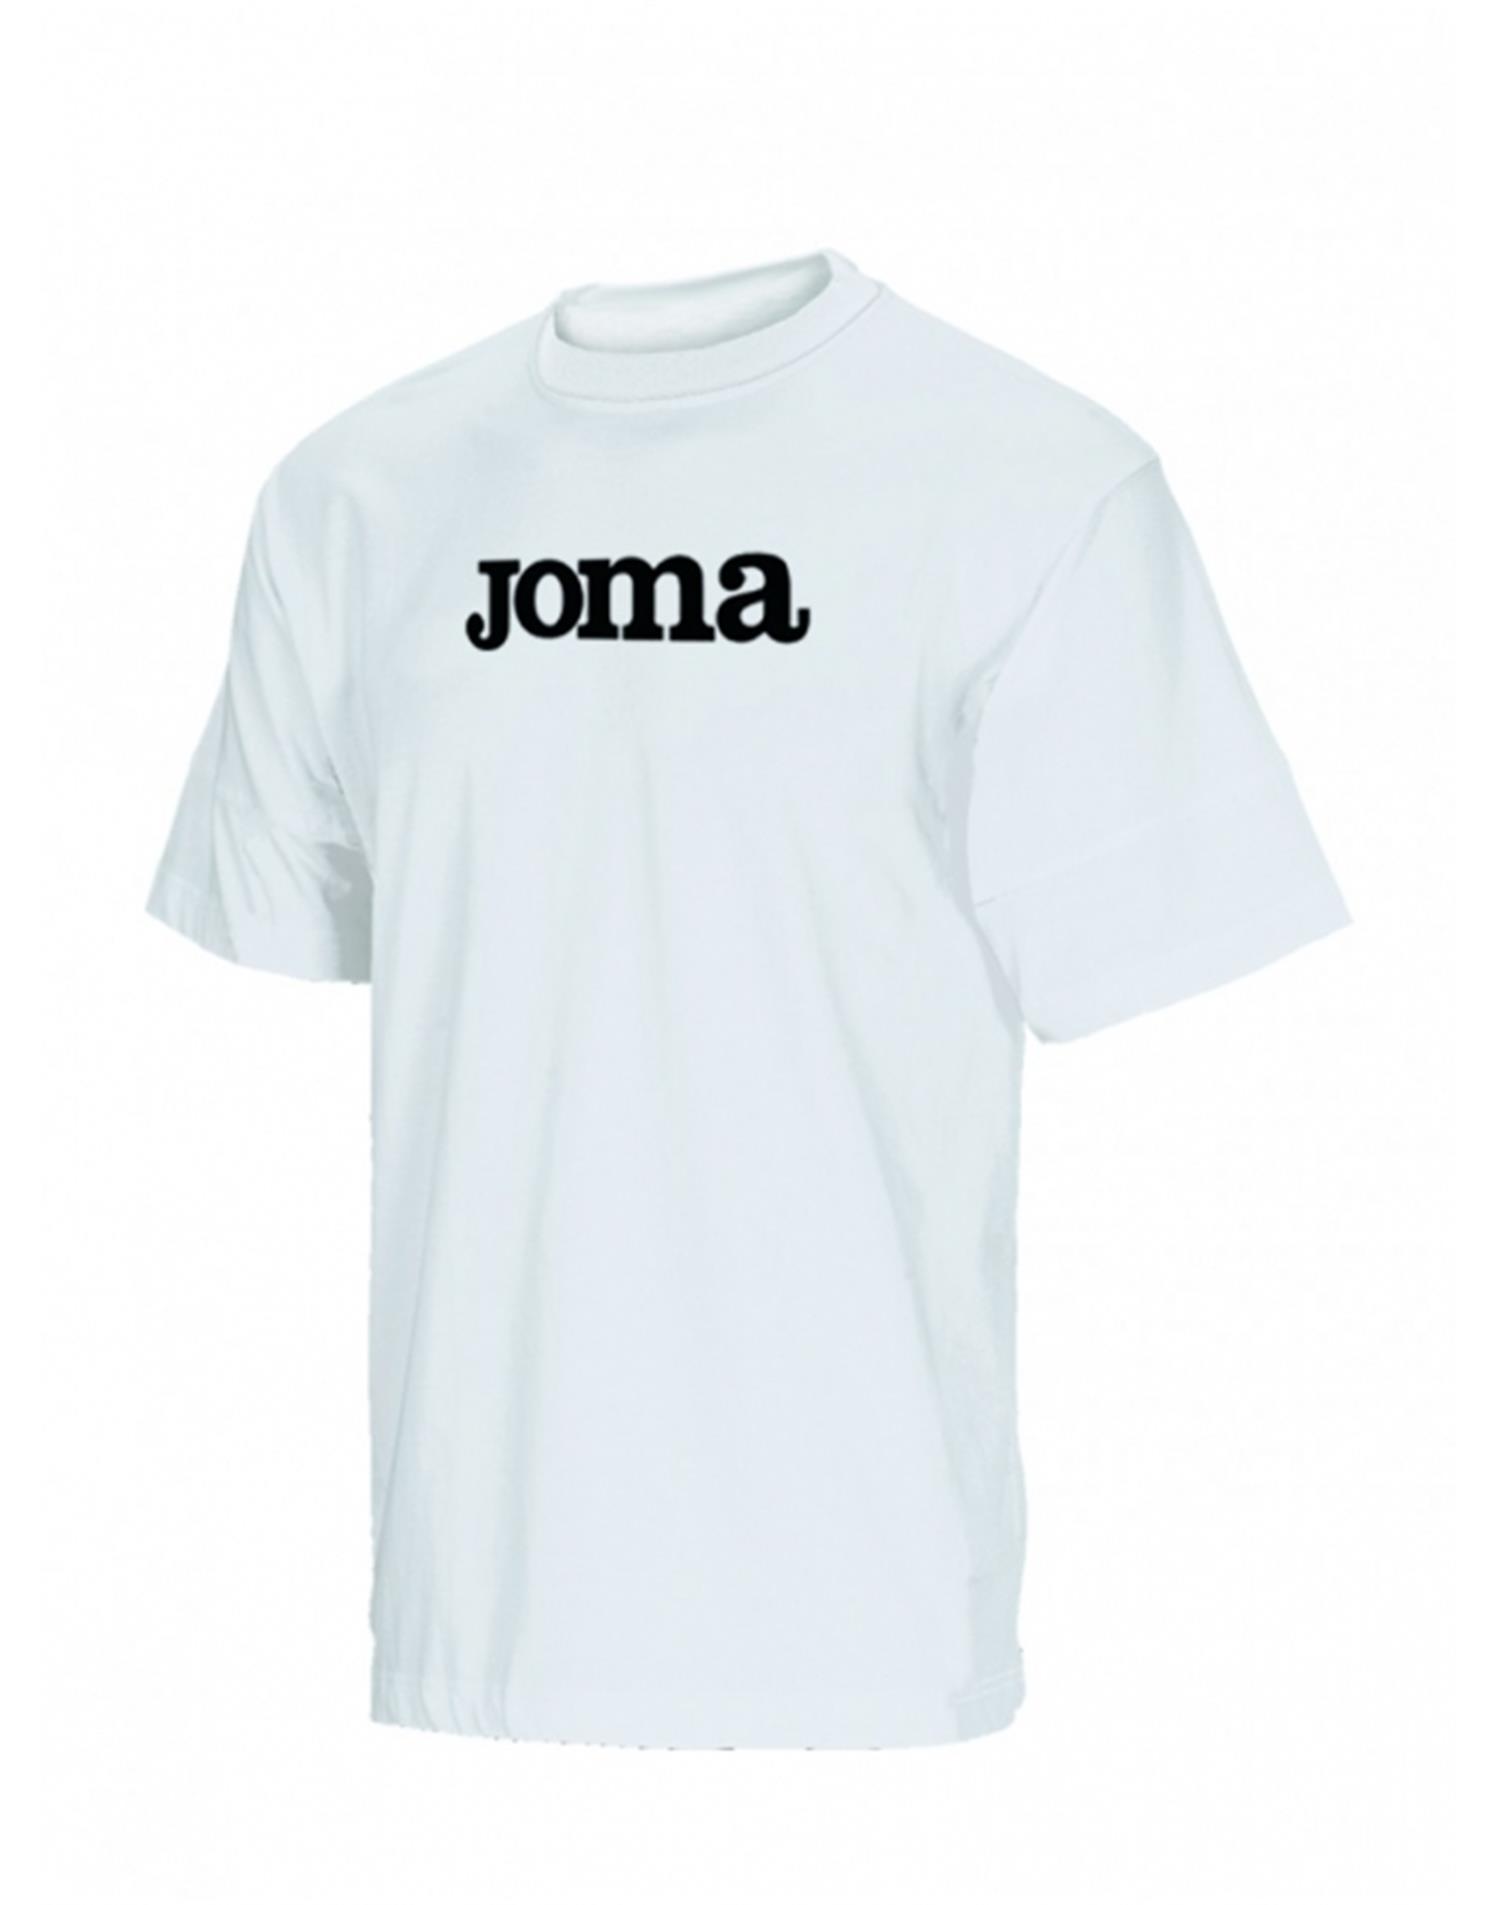 JOMA T-shirt Basic (14 Anni - BIANCO)